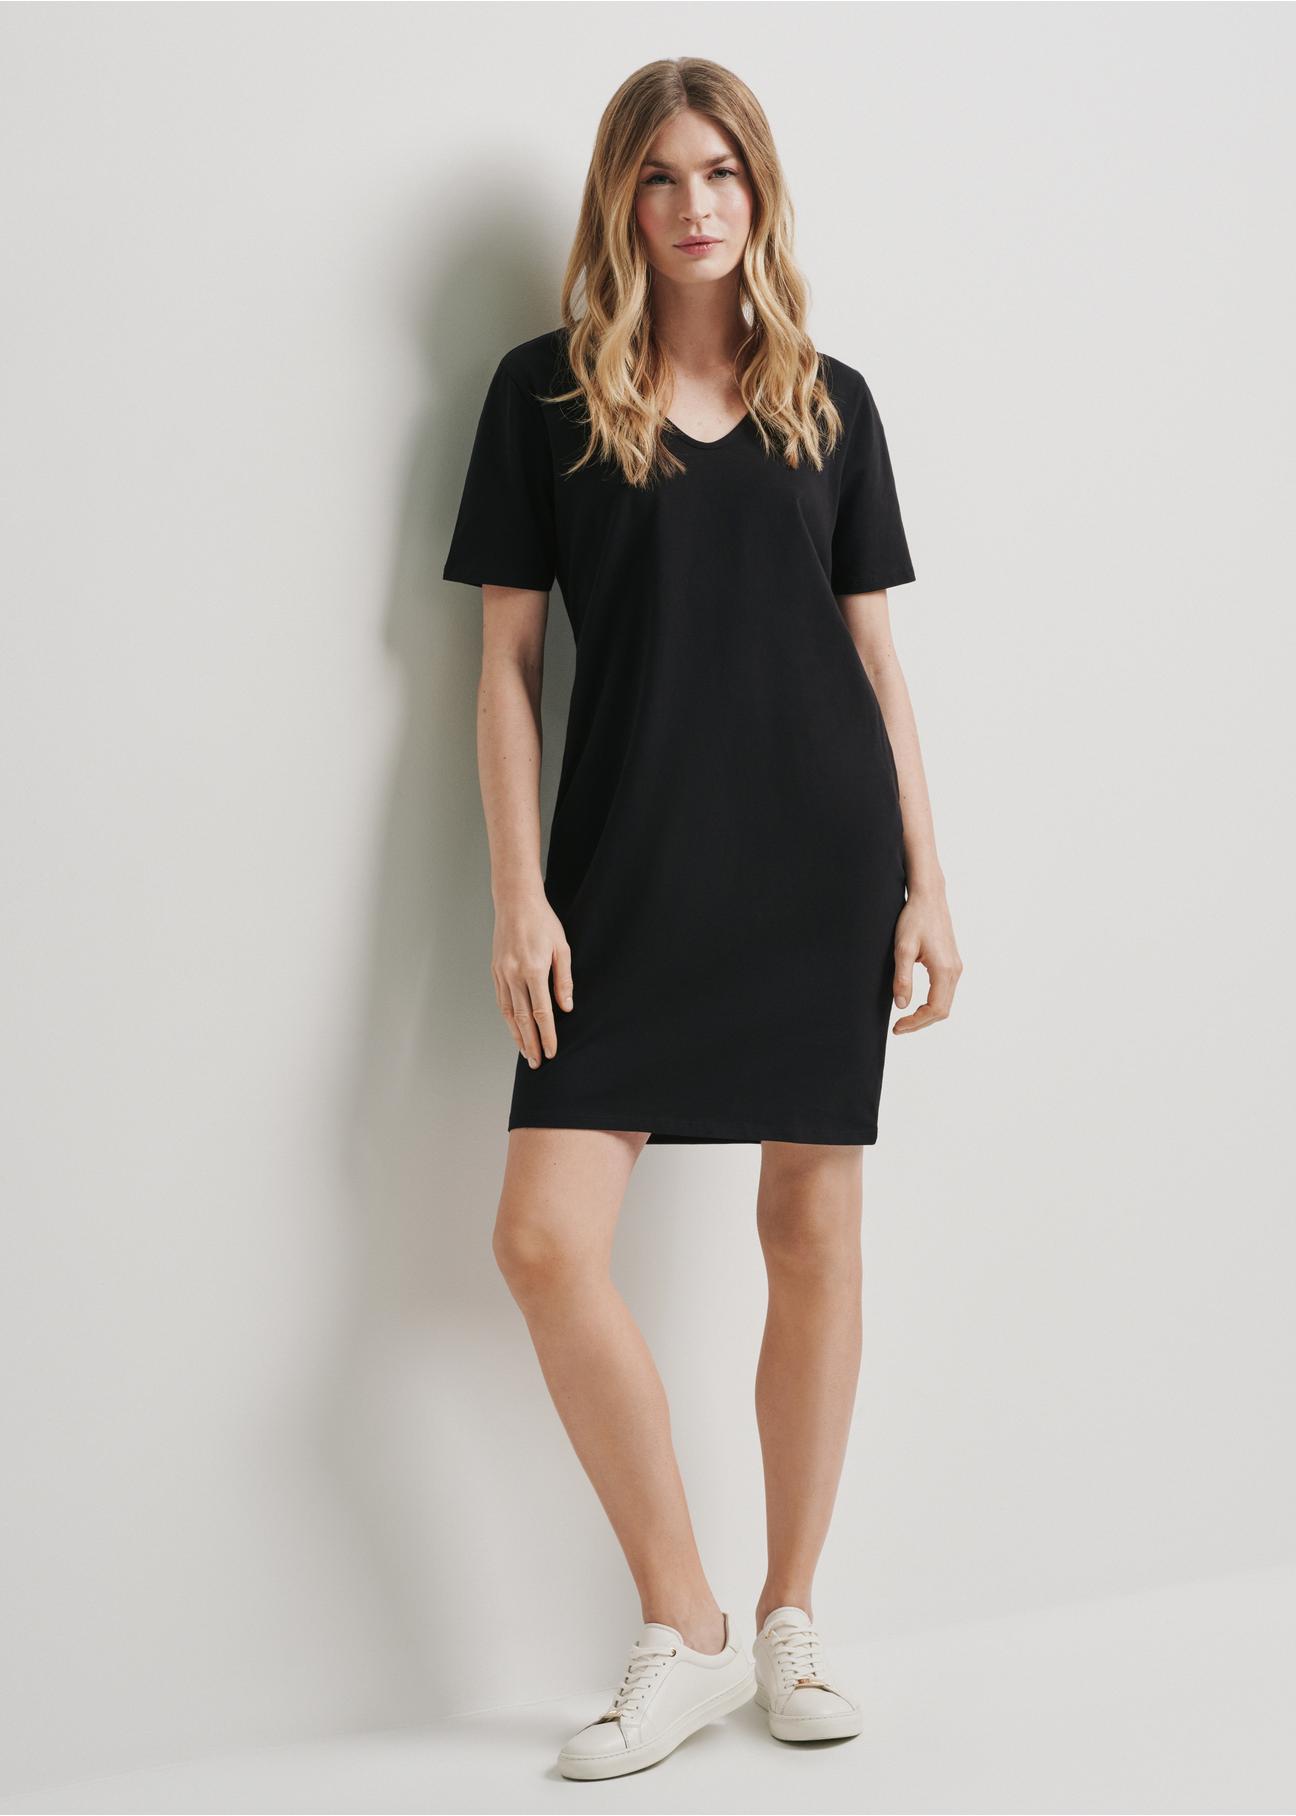 Krótka bawełniana czarna sukienka SUKDT-0185-99(W24)